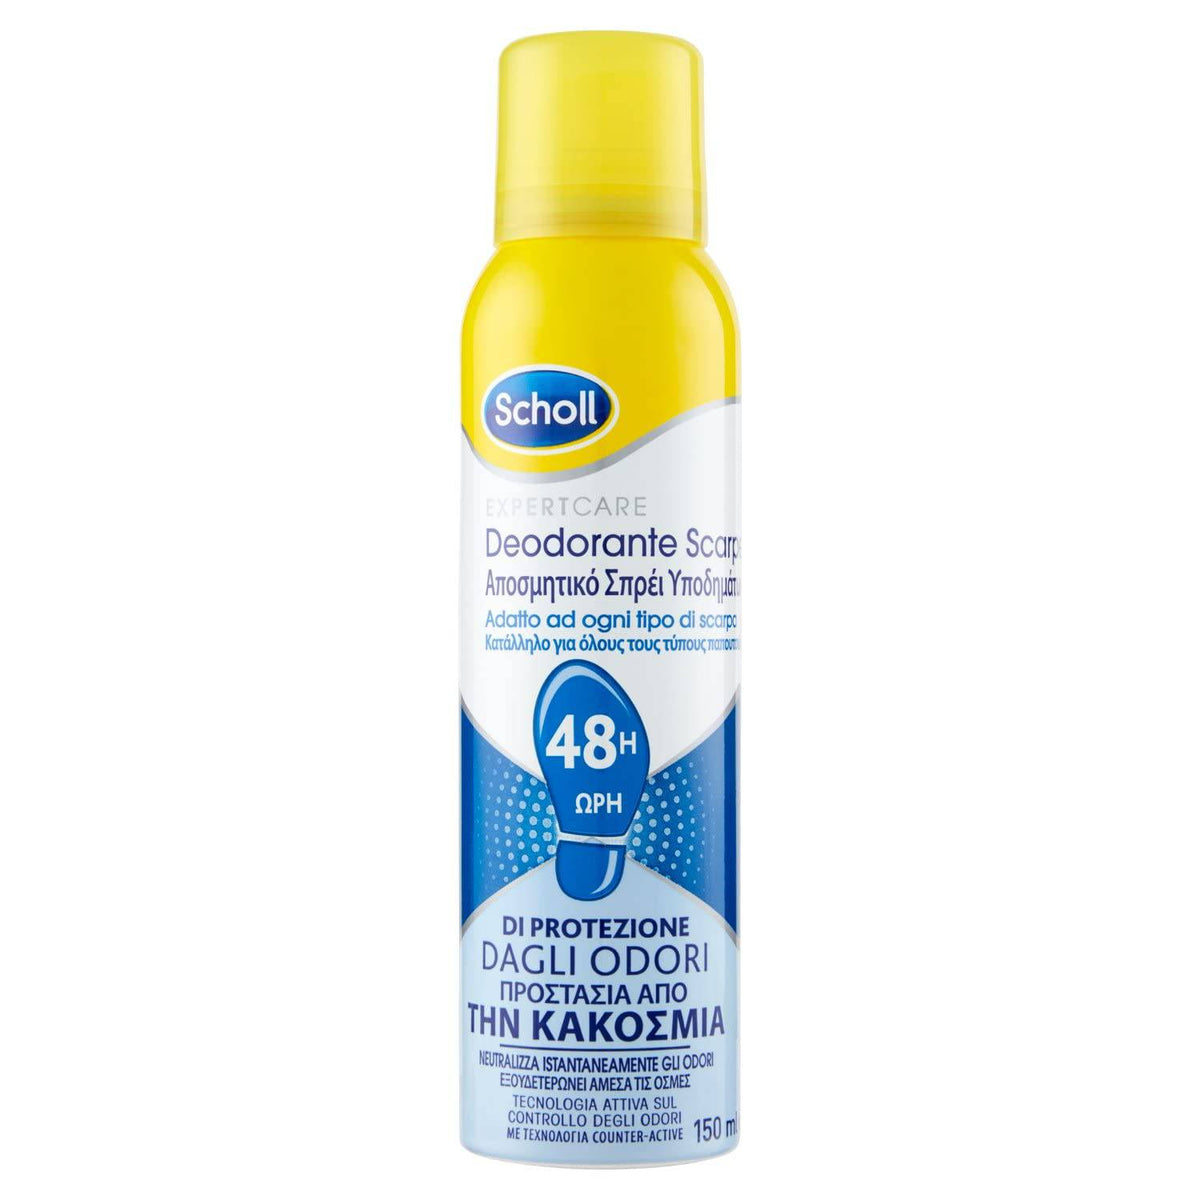 Scholl Deodorante Spray per Scarpe, 48h di Protezione Dagli Odori